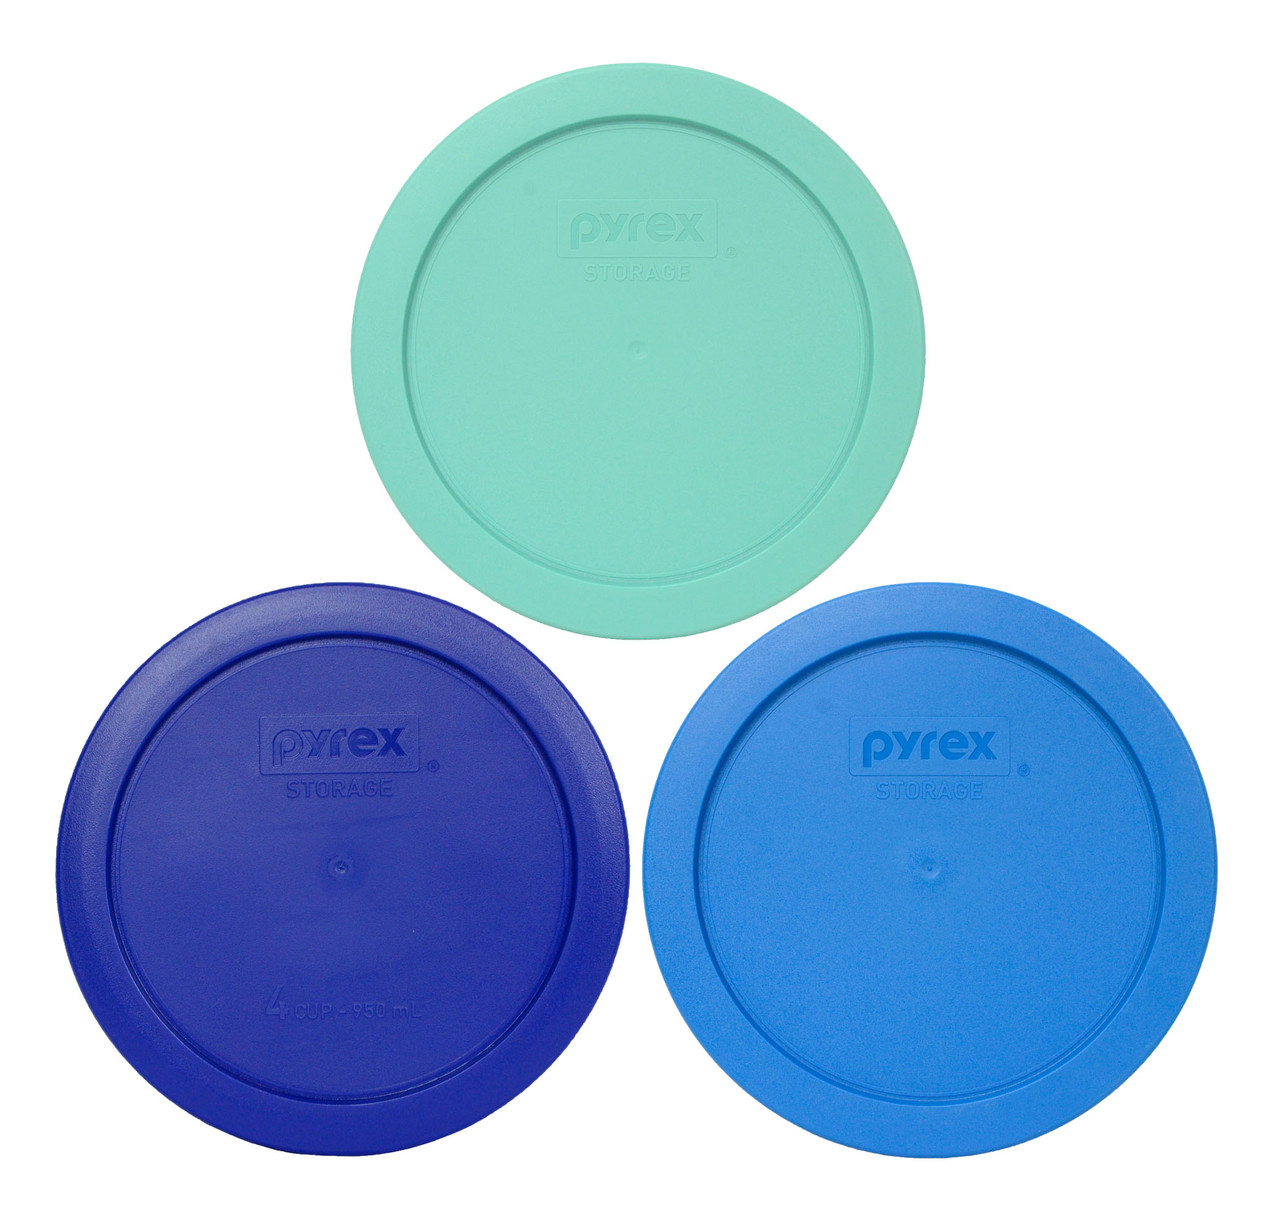 Pyrex 7201 4-Cup Glass Food Storage Bowl w/ 7201-PC Marine Blue